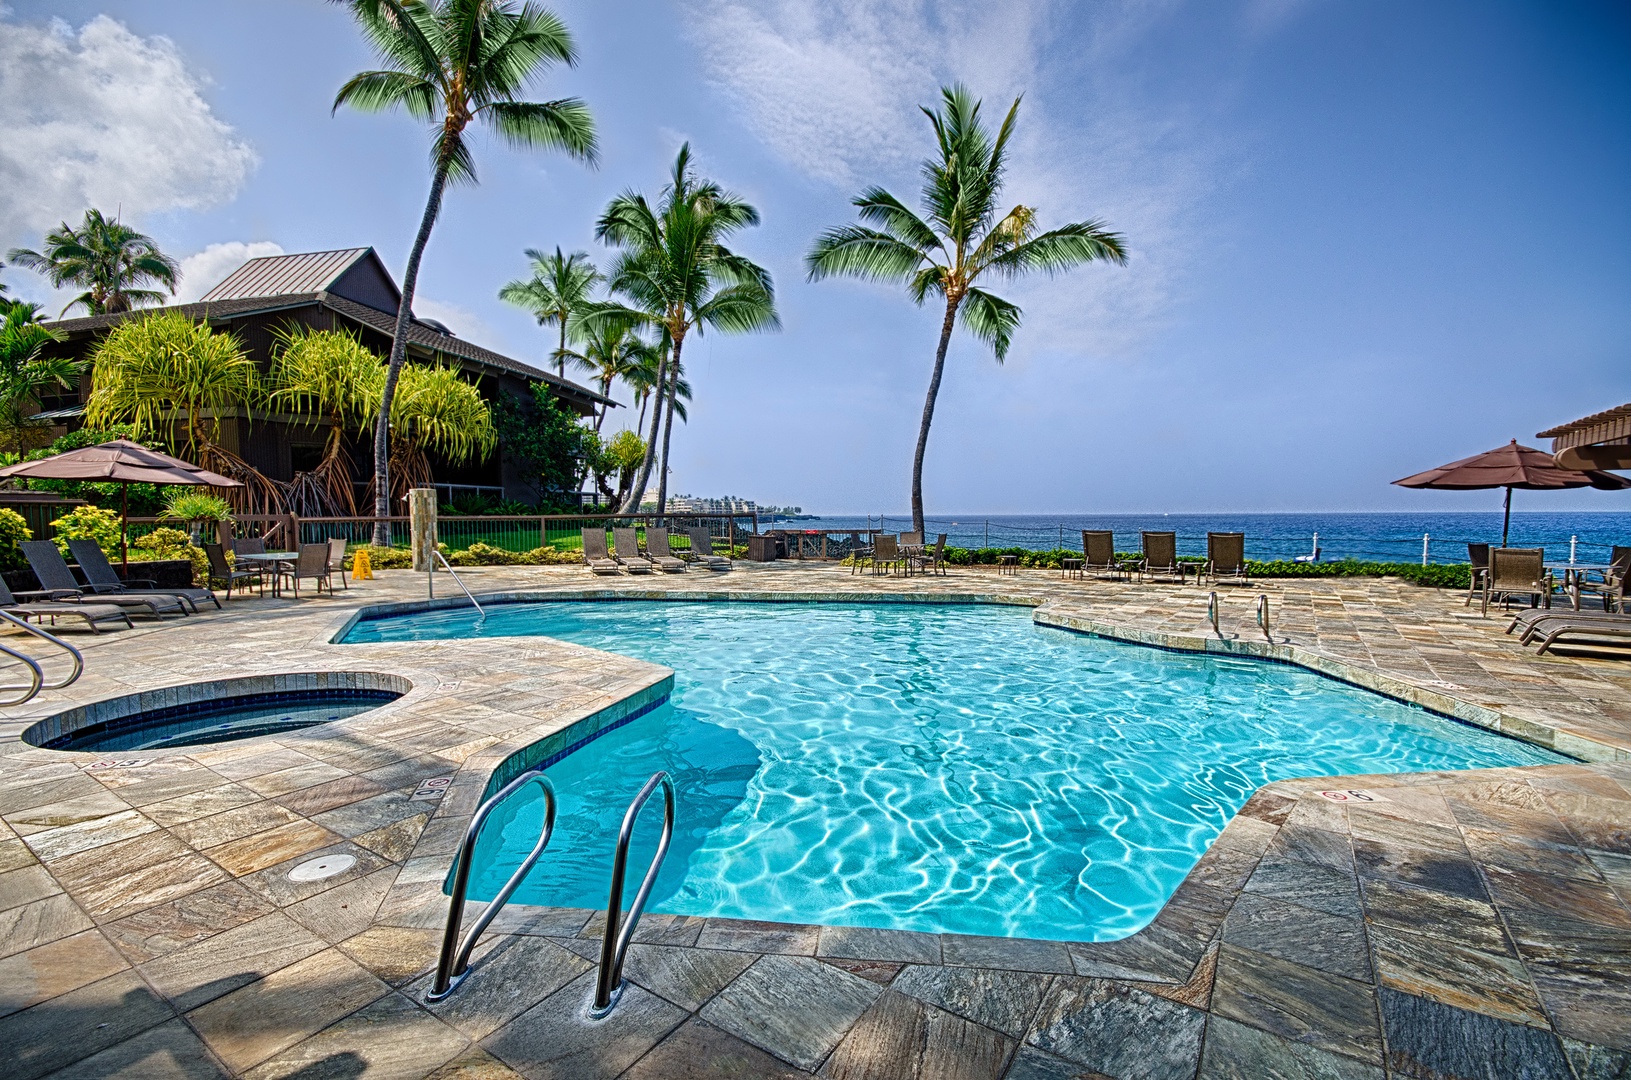 Kailua Kona Vacation Rentals, Kanaloa at Kona 701 - Pool with hot tub 100 feet from the condo